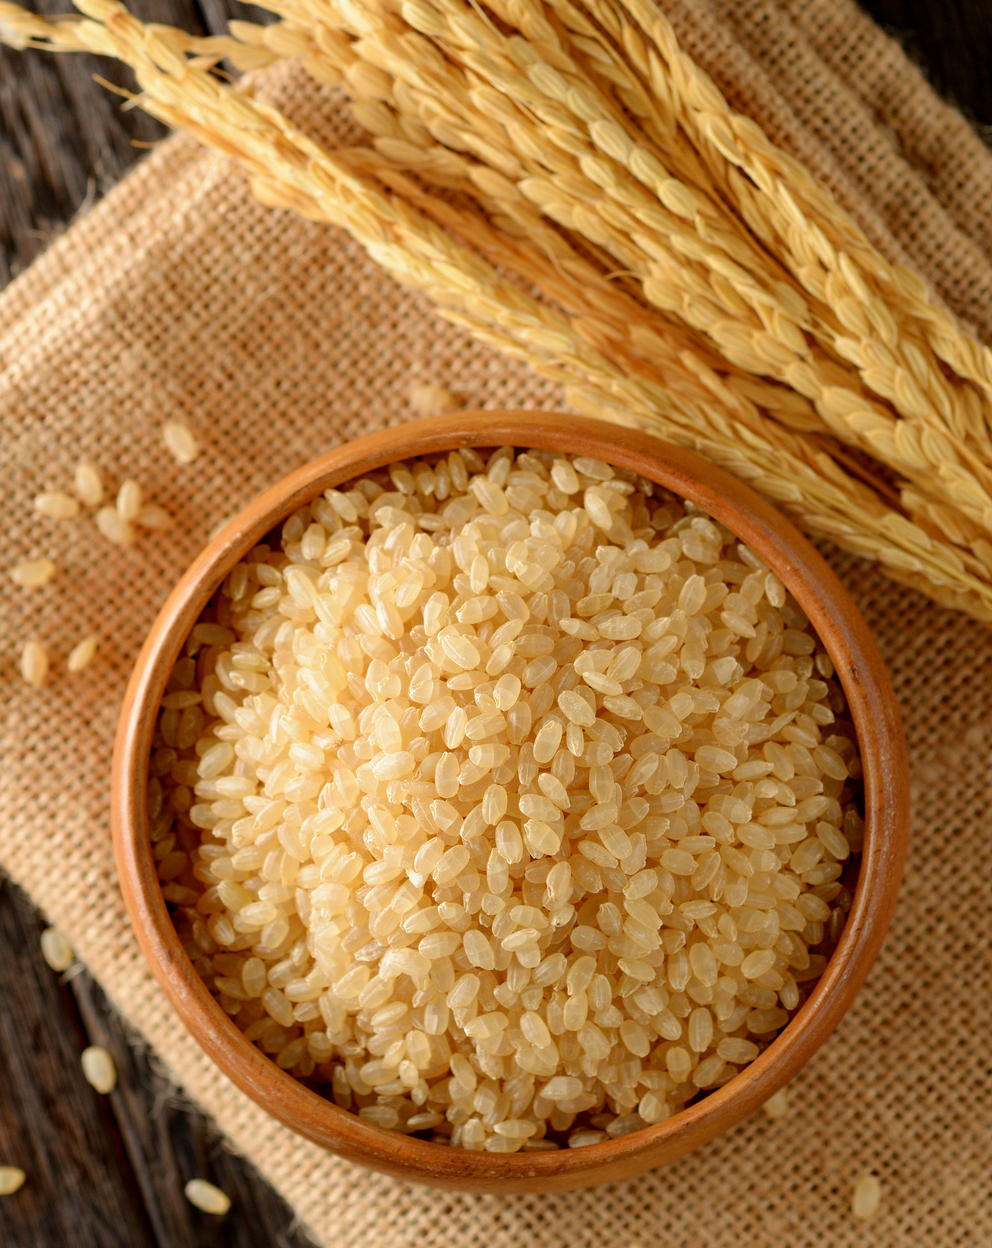 「米ぬか」成分に血圧降下作用　米ぬかペプチドが血管機能を改善　食品素材として活用